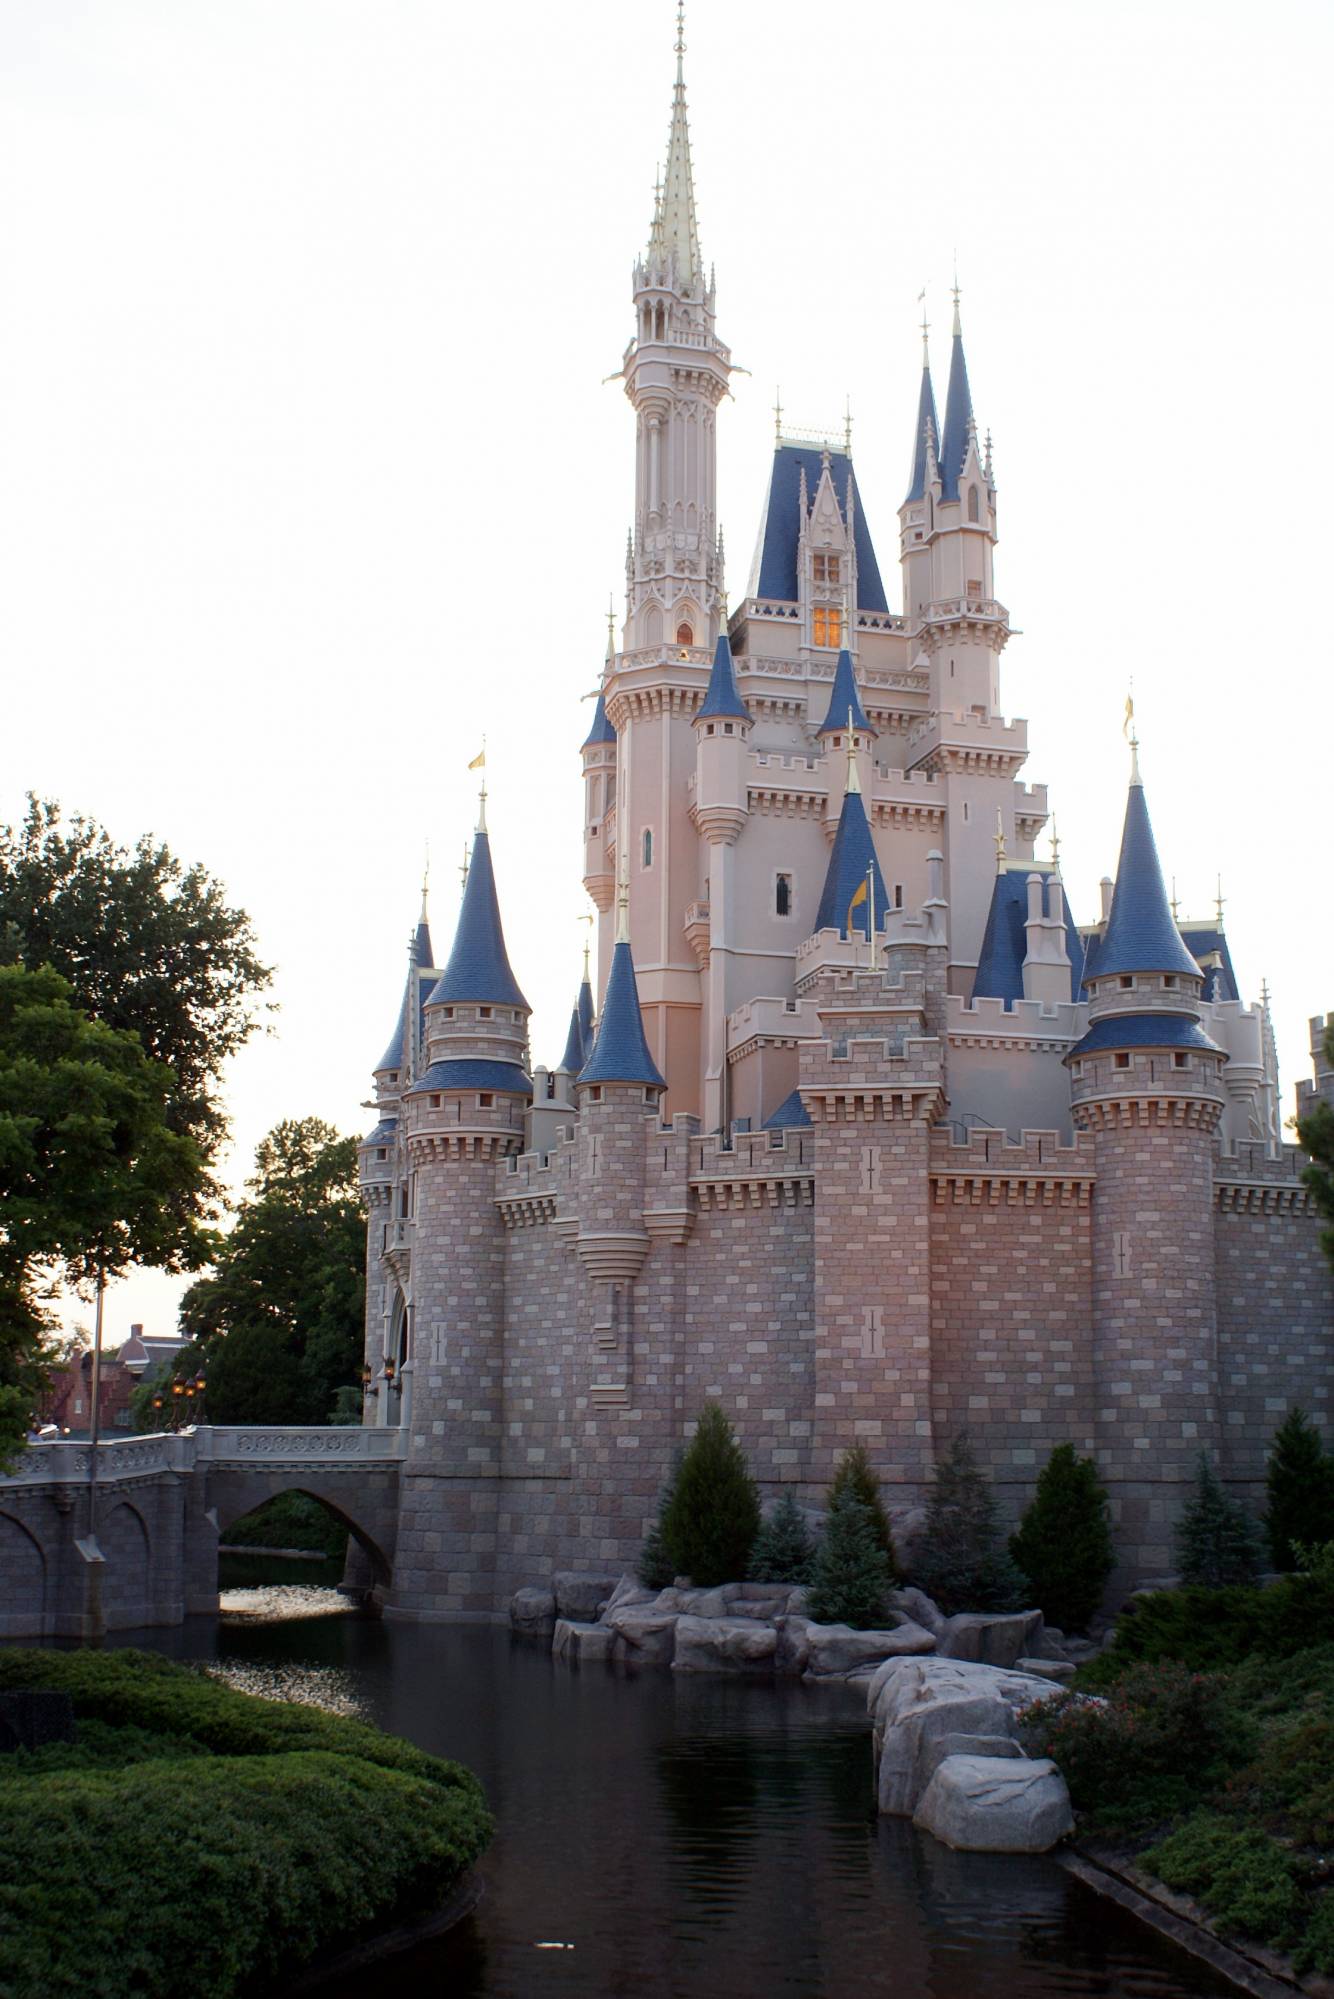 Cinderella's Castle at